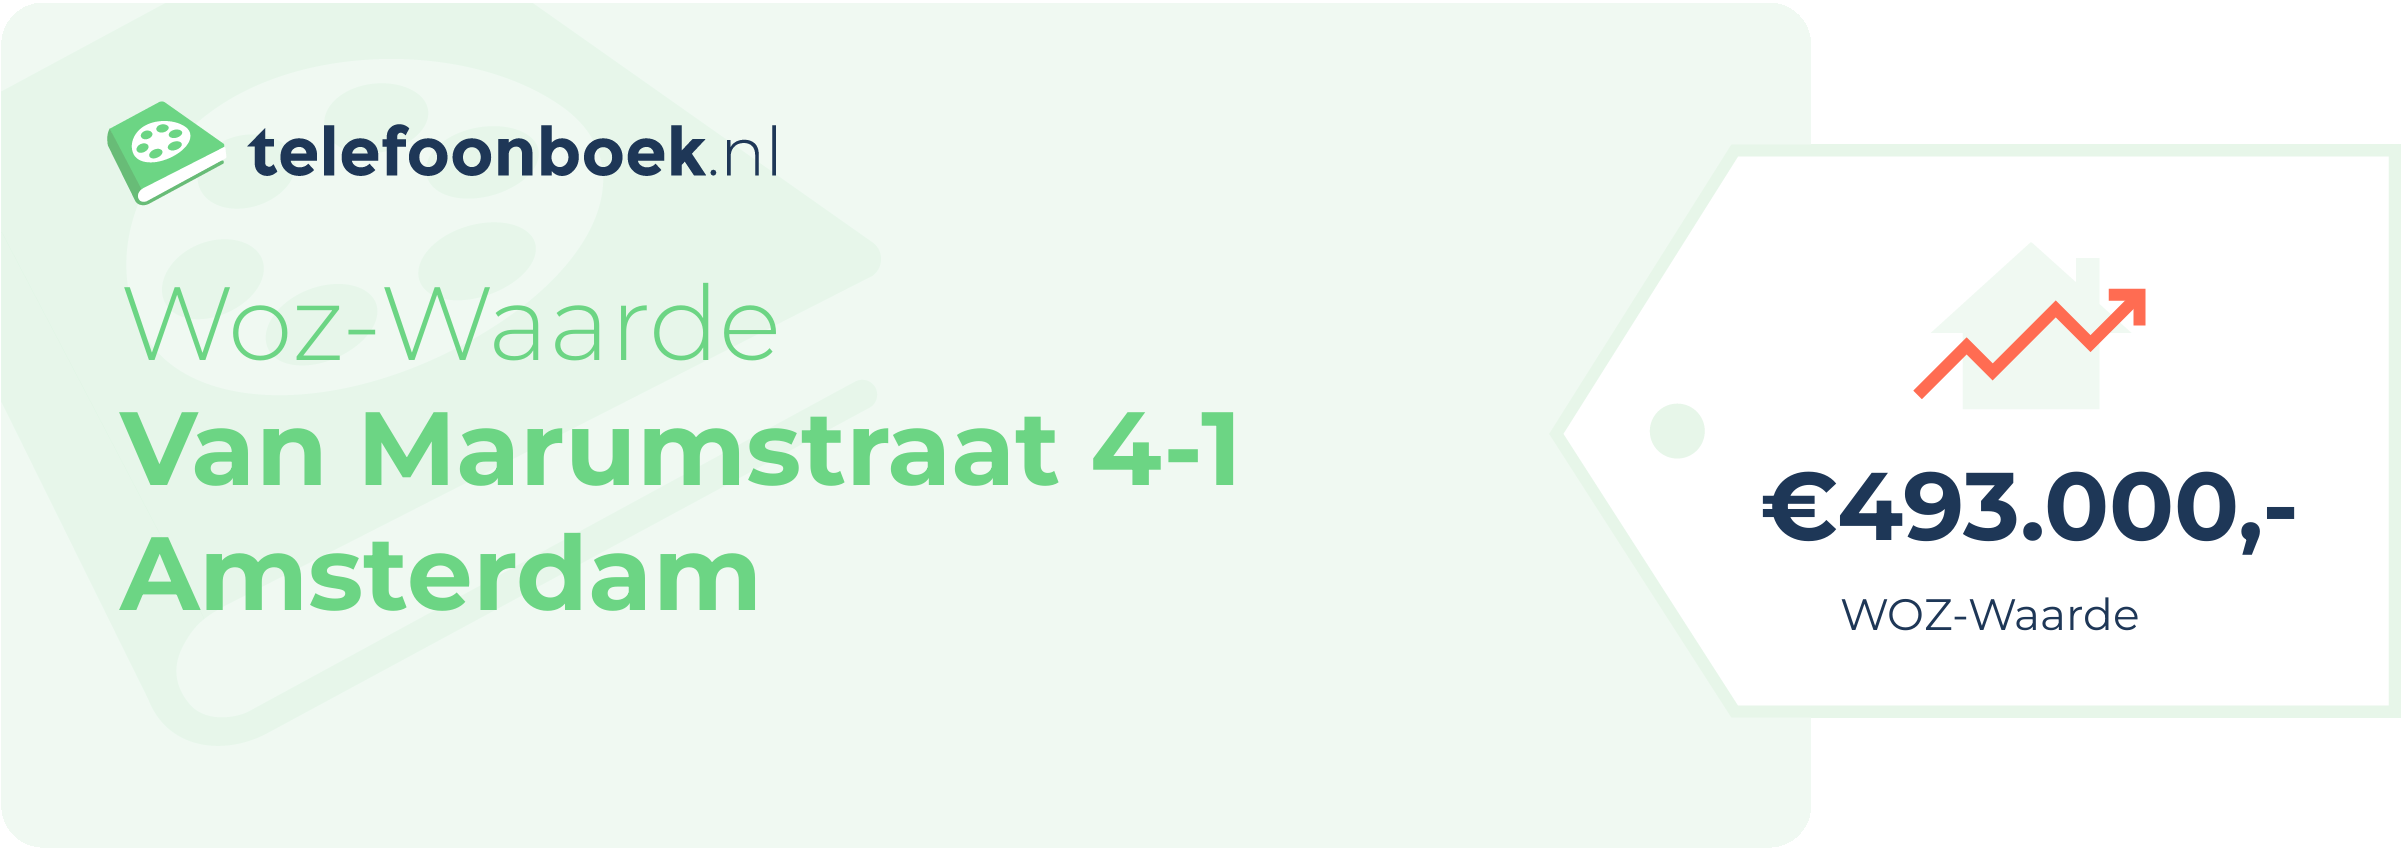 WOZ-waarde Van Marumstraat 4-1 Amsterdam